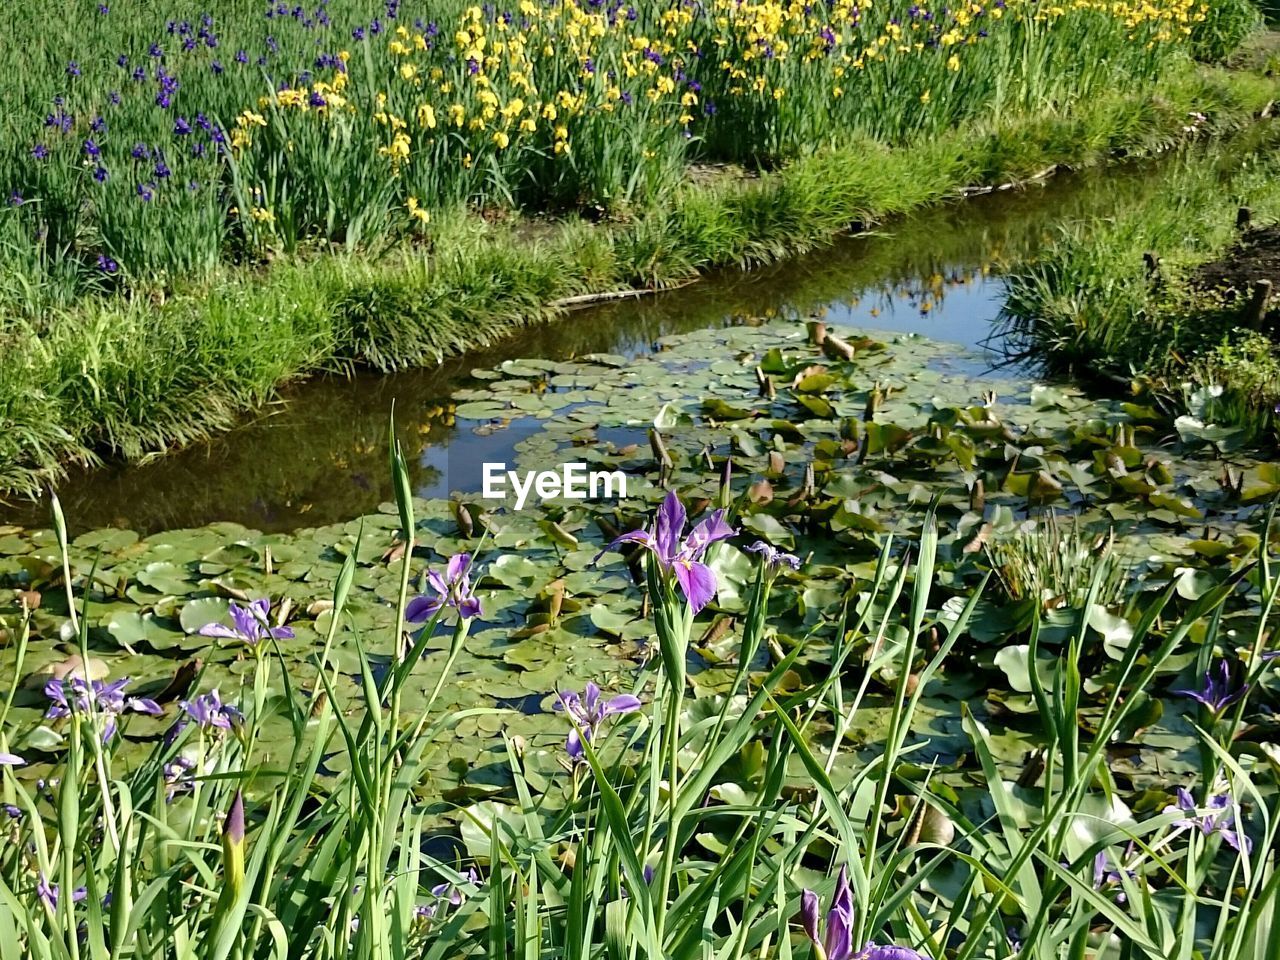 Flowers blooming in lake